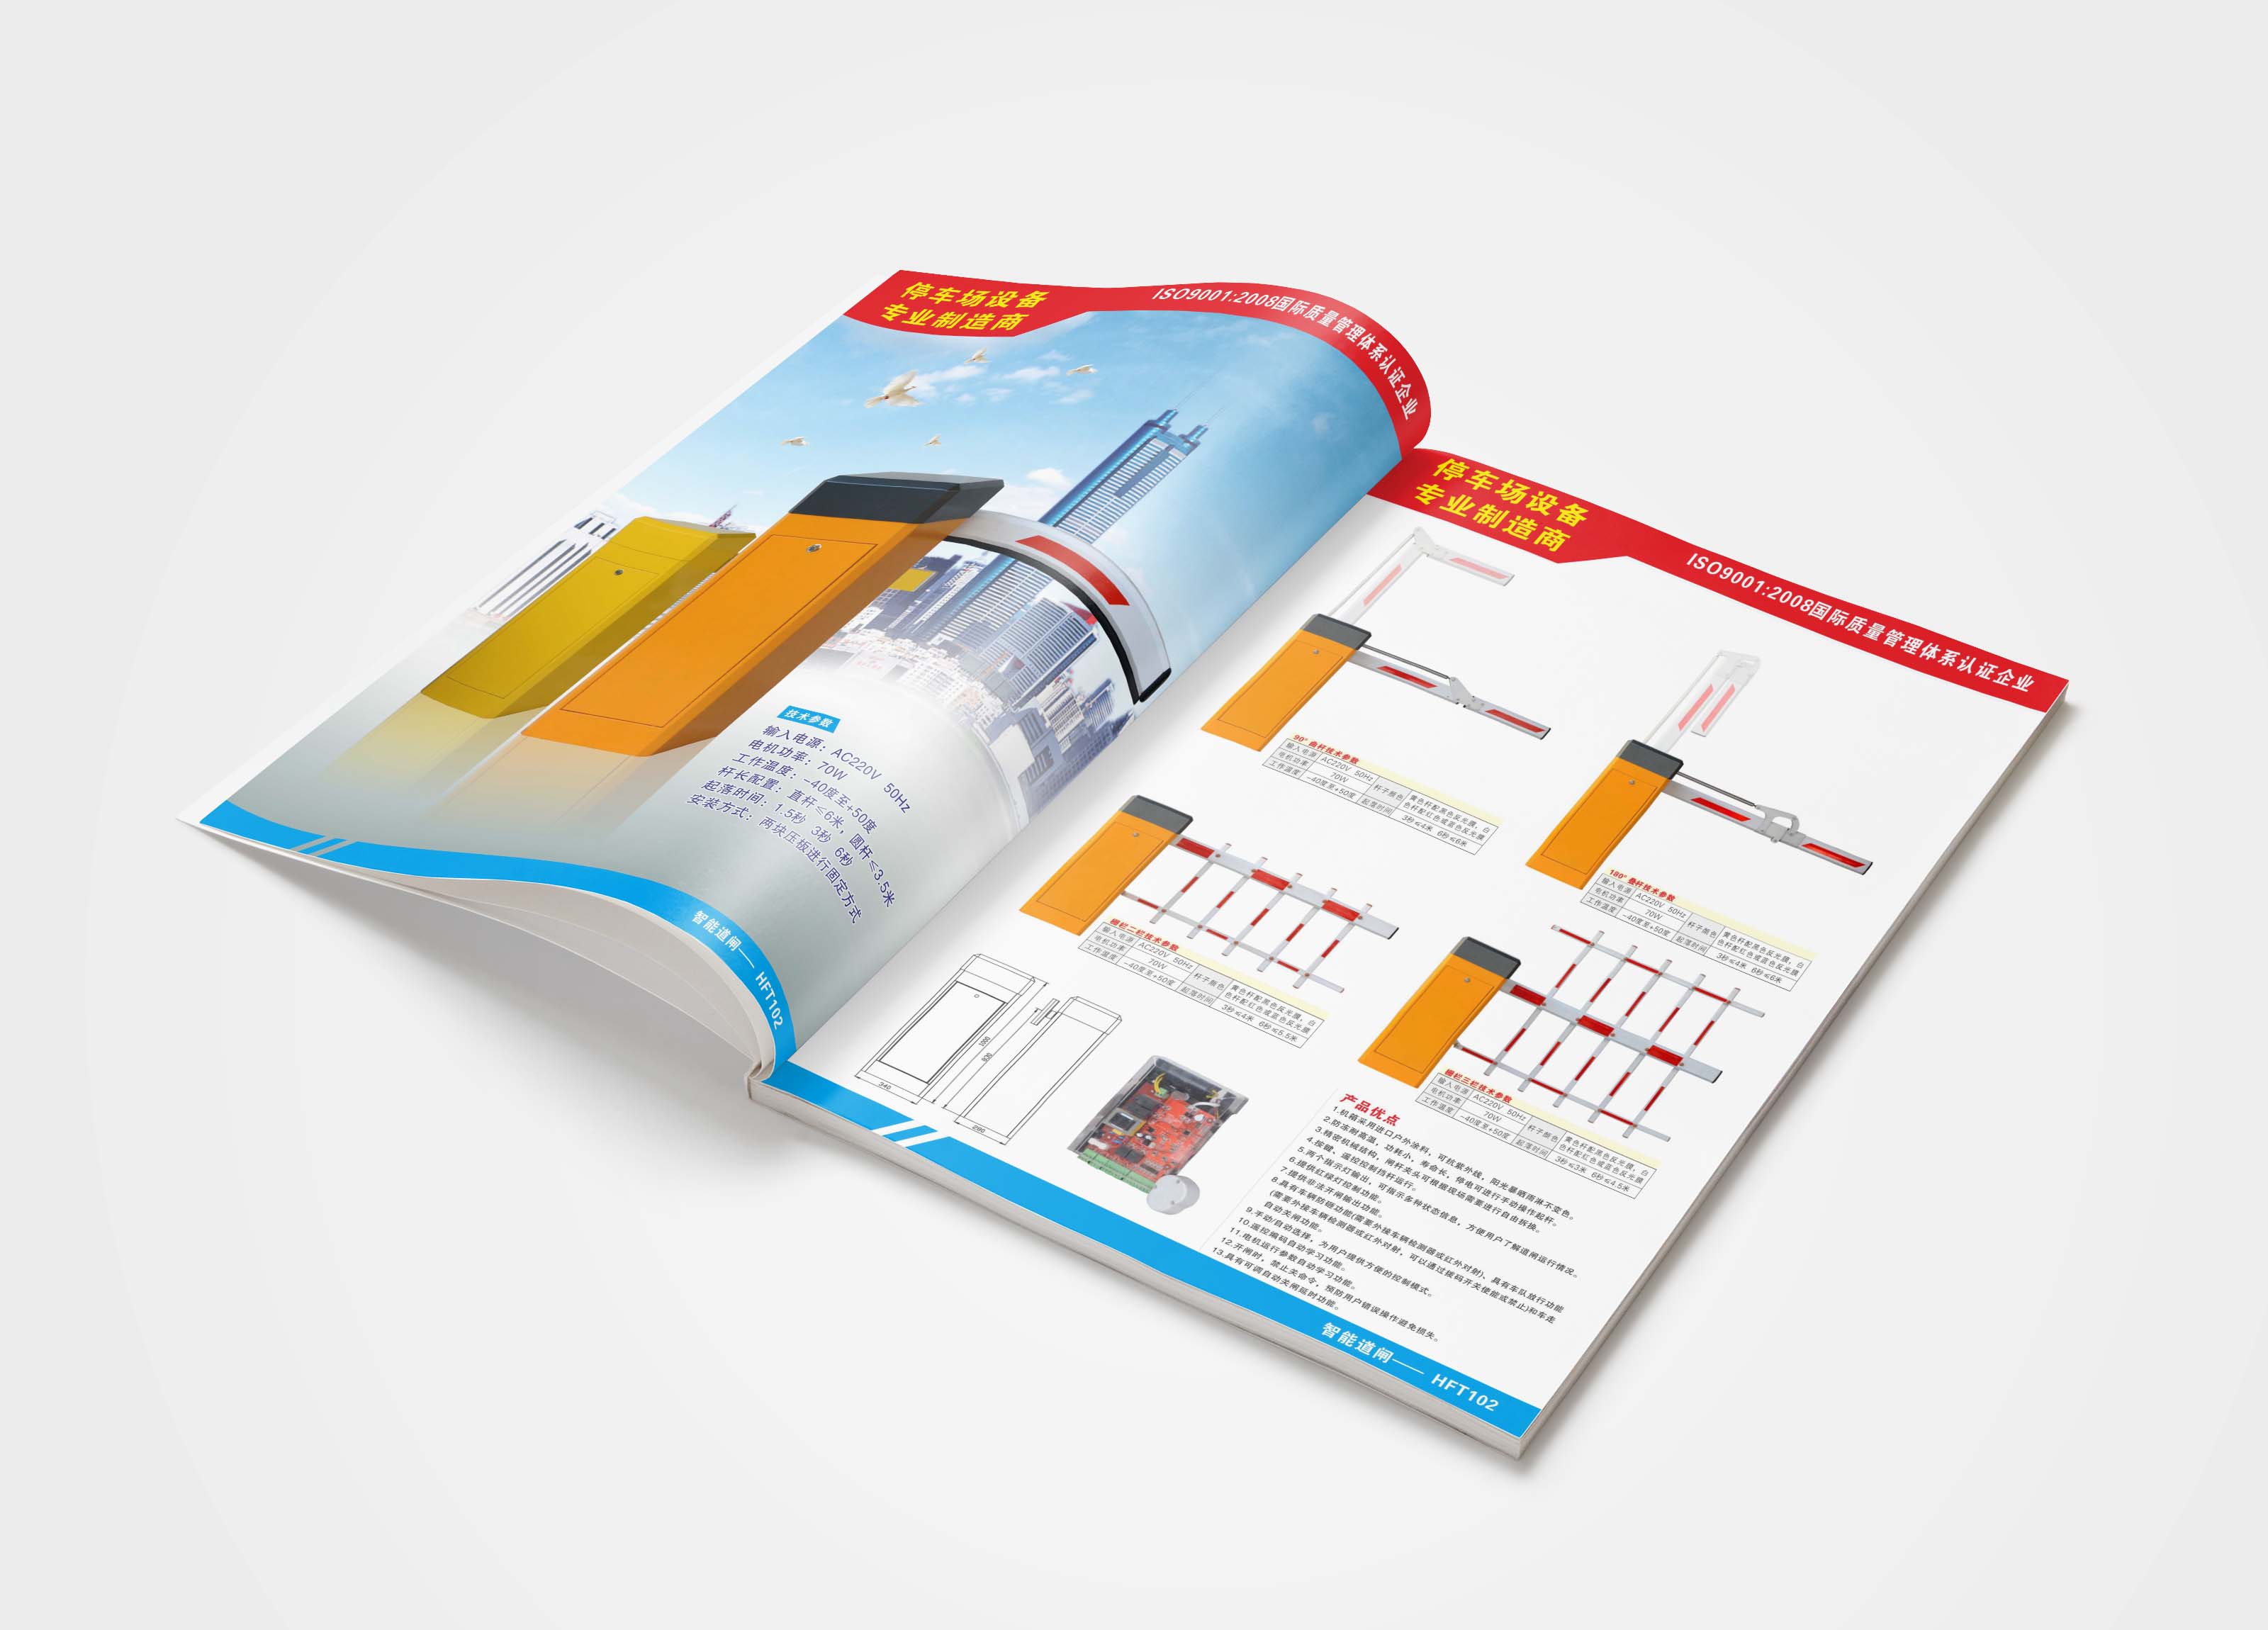 公明宣传册设计印刷 公明自动化设备画册设计印刷